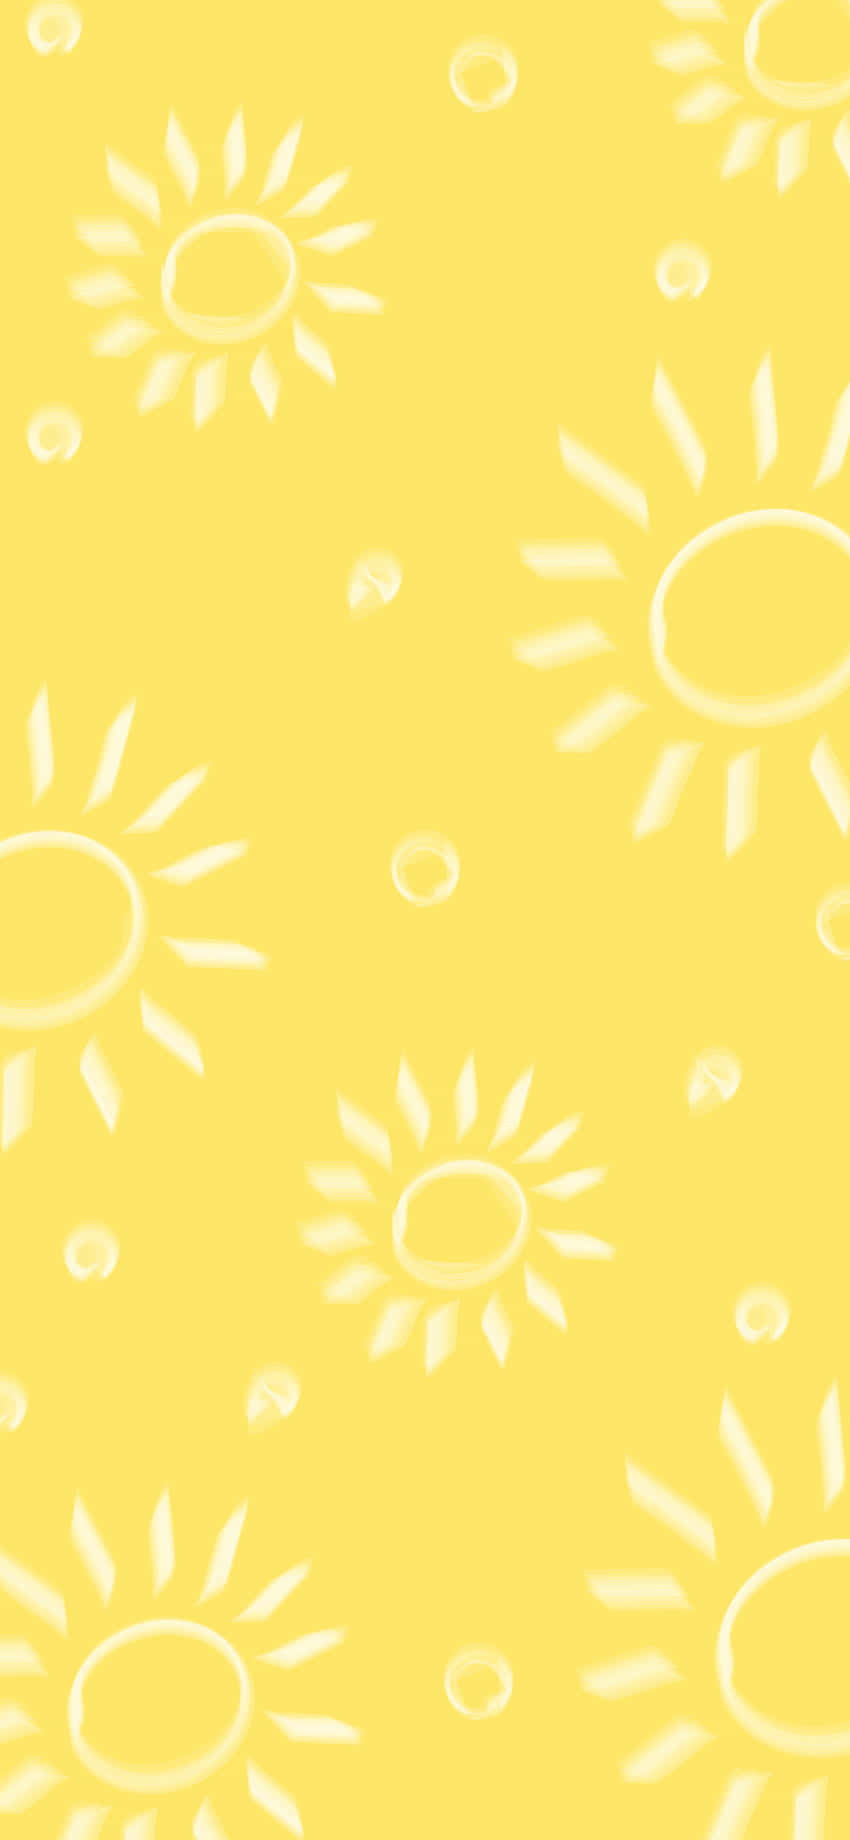 Find Your Inner Sunshine Wallpaper